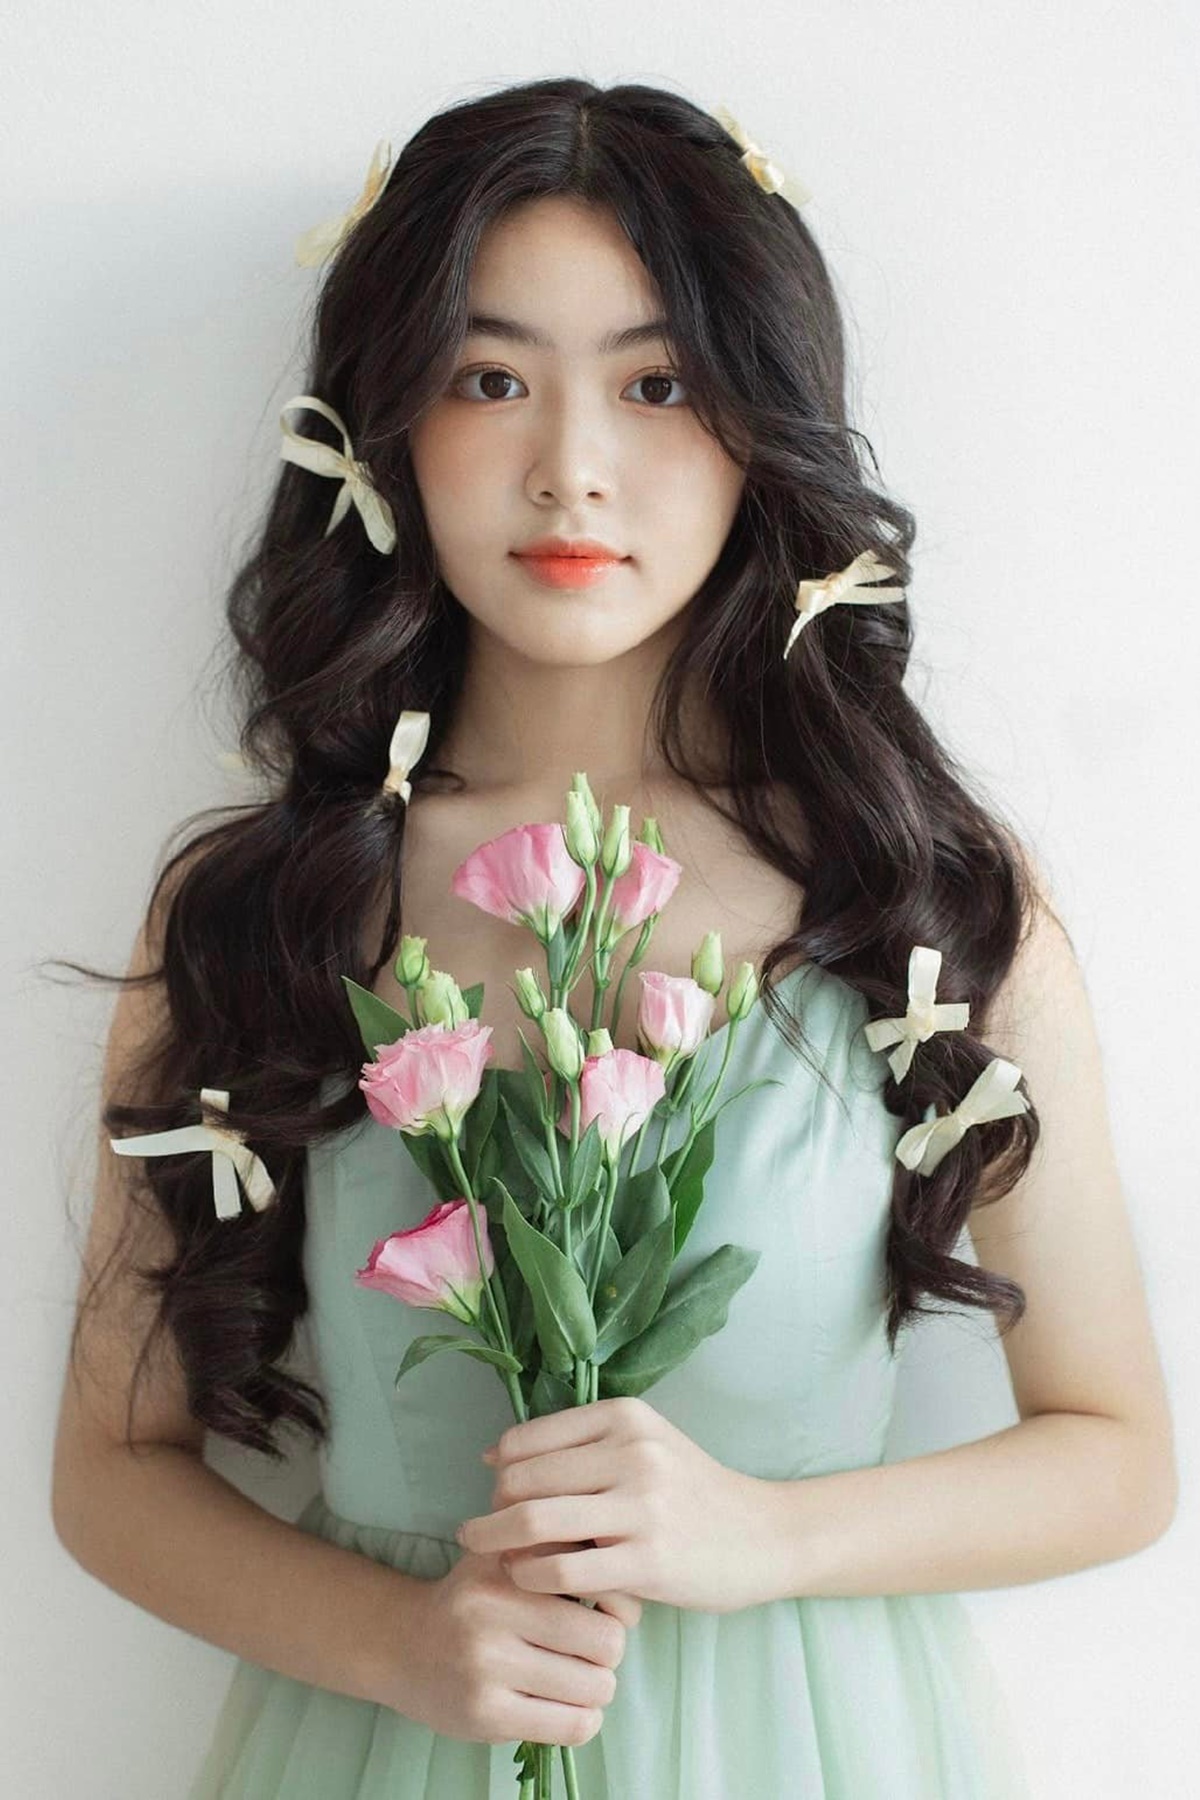 Mê mệt với nhan sắc "chuẩn Hoa hậu" của con gái Quyền Linh